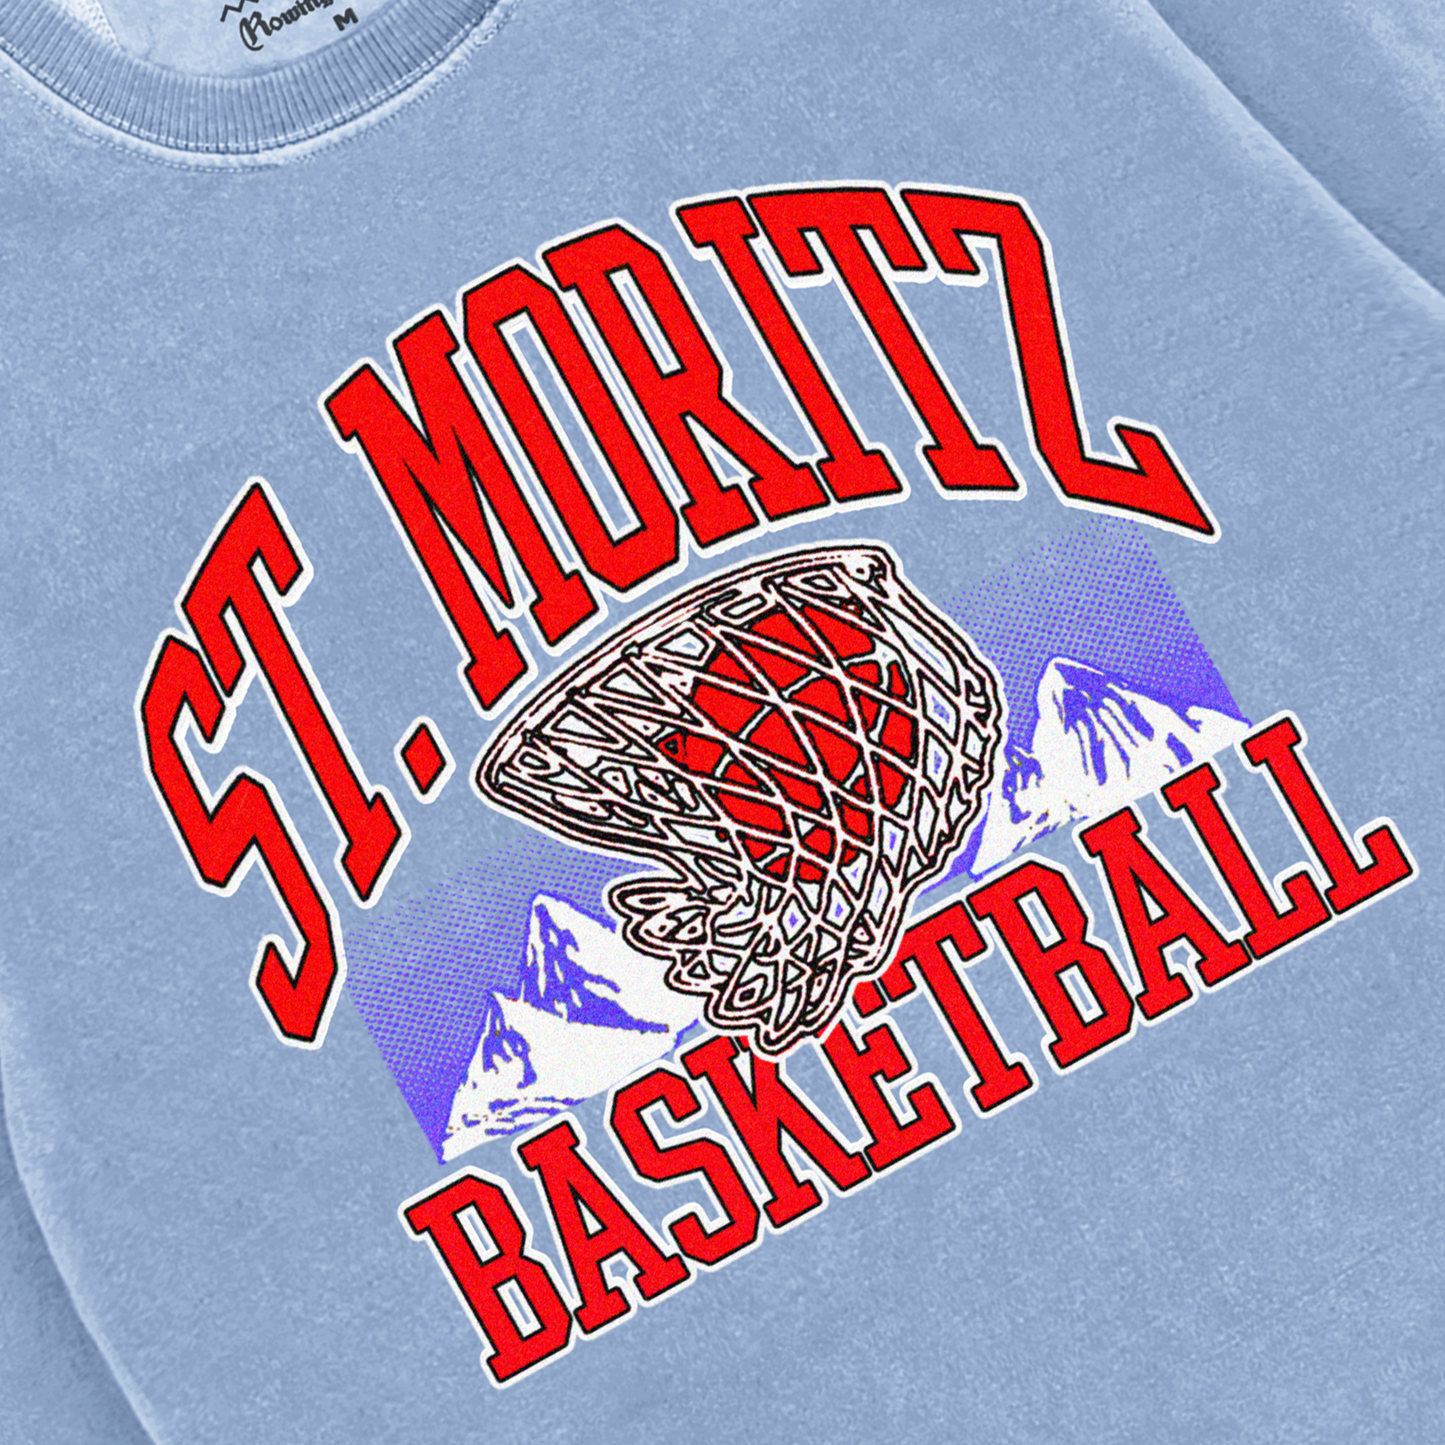 St. Moritz Basketball Tee